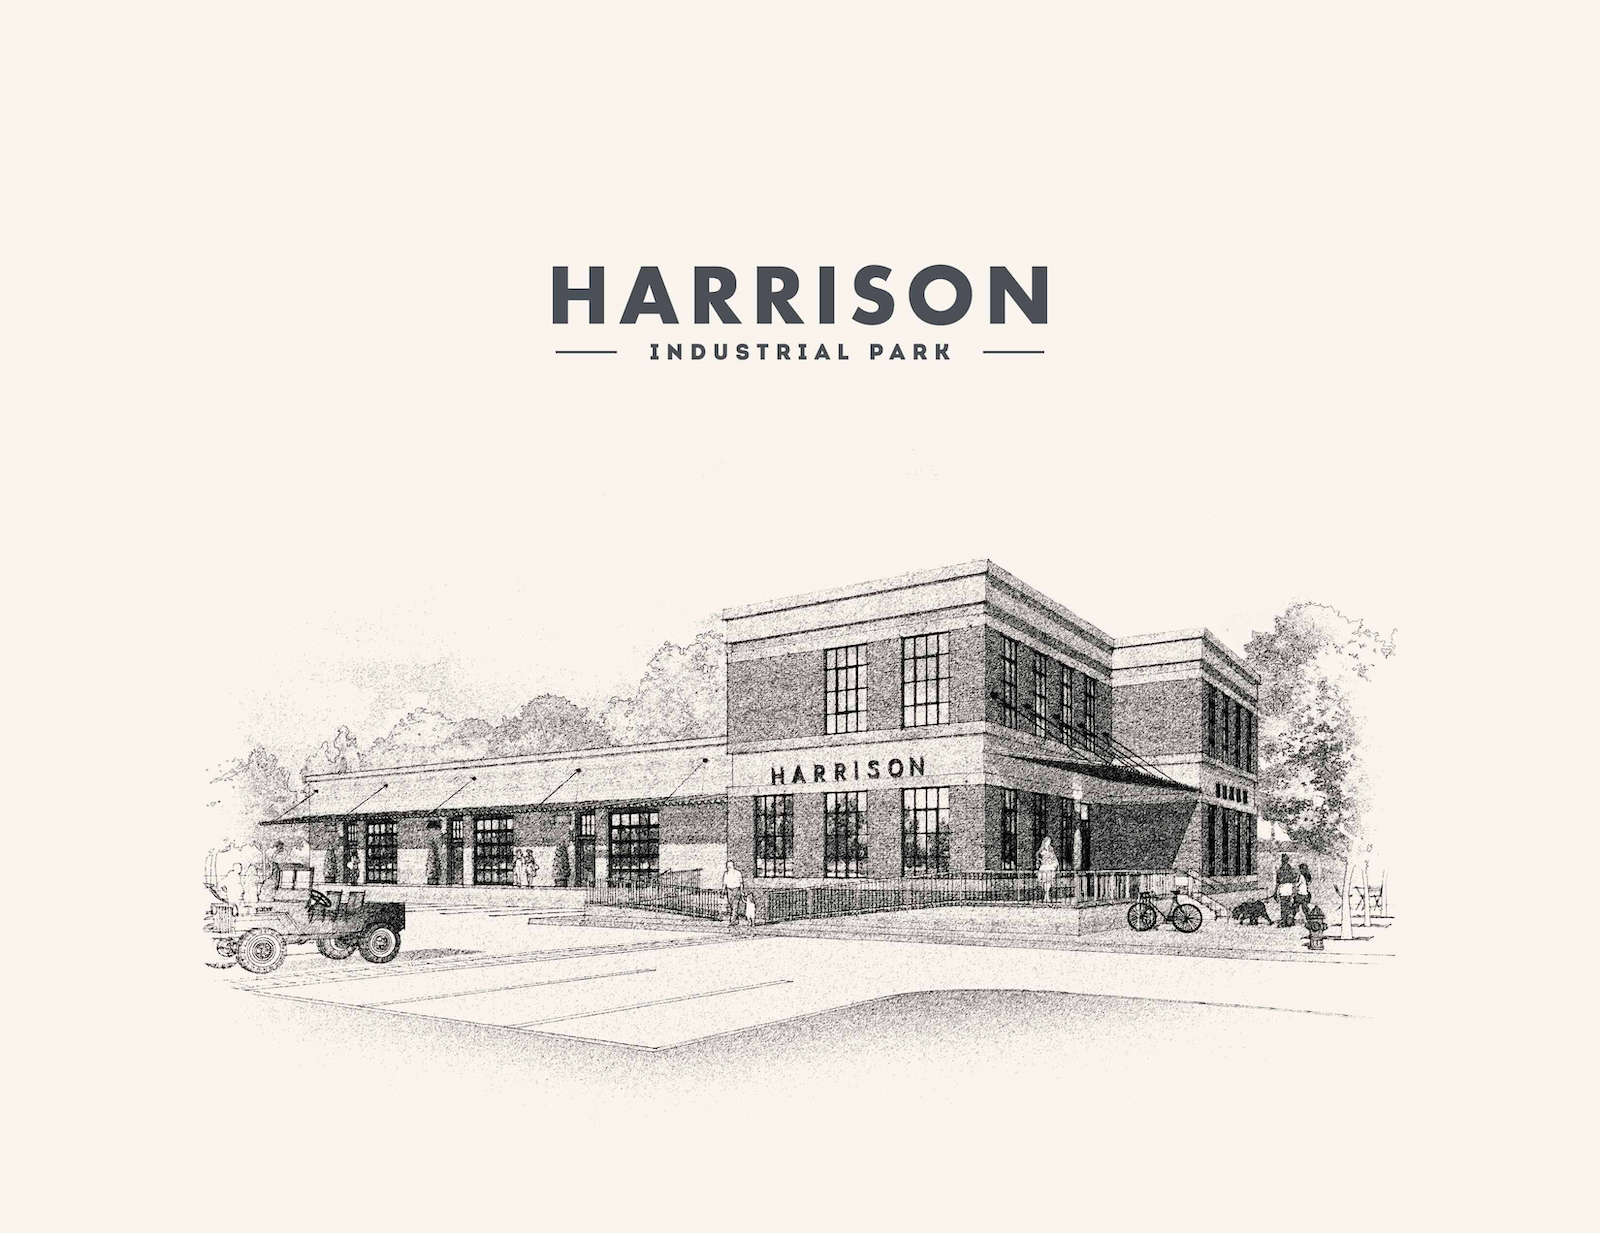 Harrison Industrial Park Mockup and Design